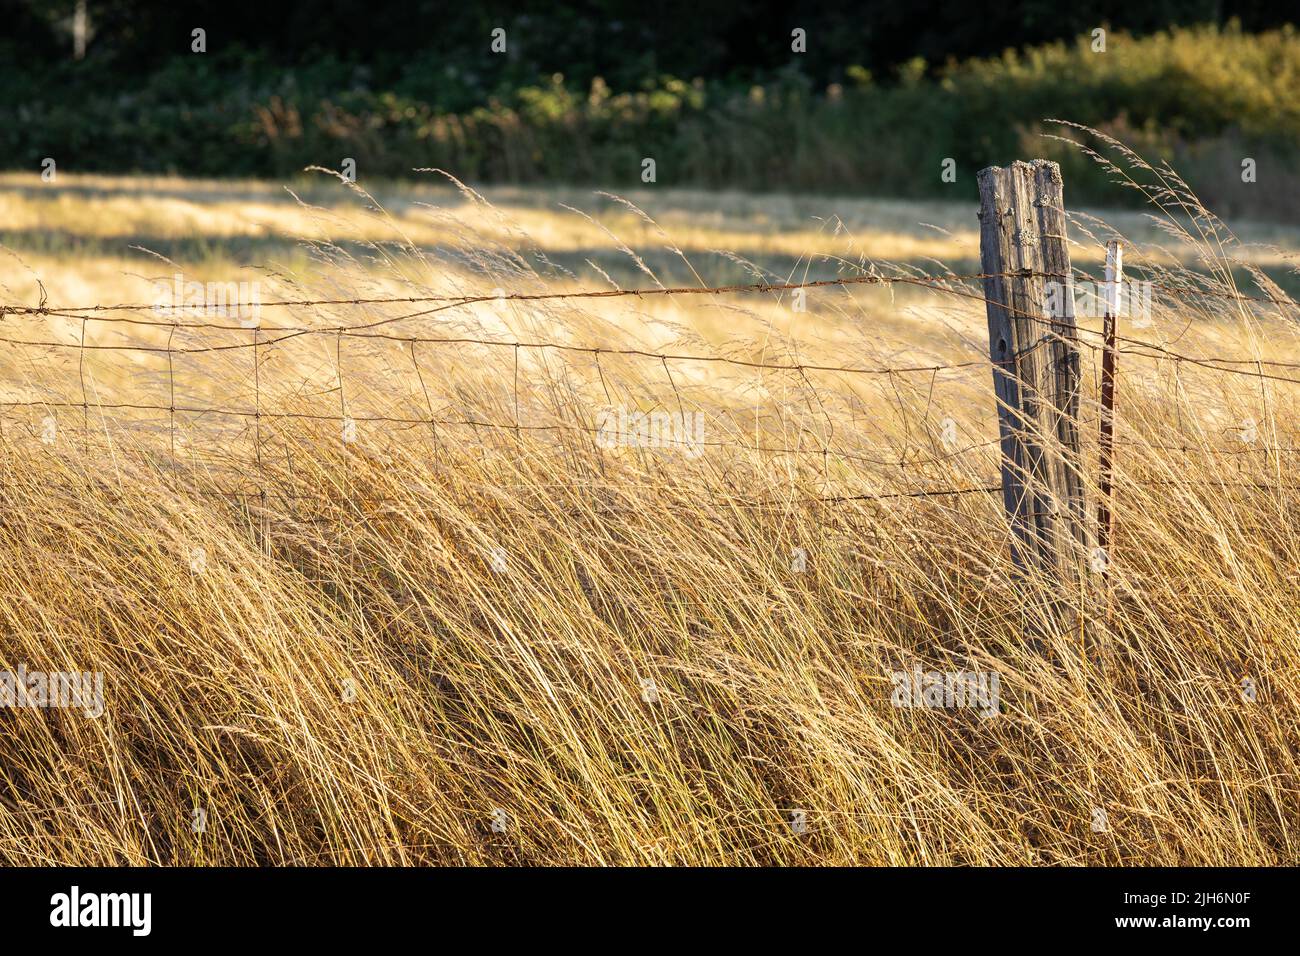 Stacheldrahtzaun Entlang Golden Wheat Field Stockfoto